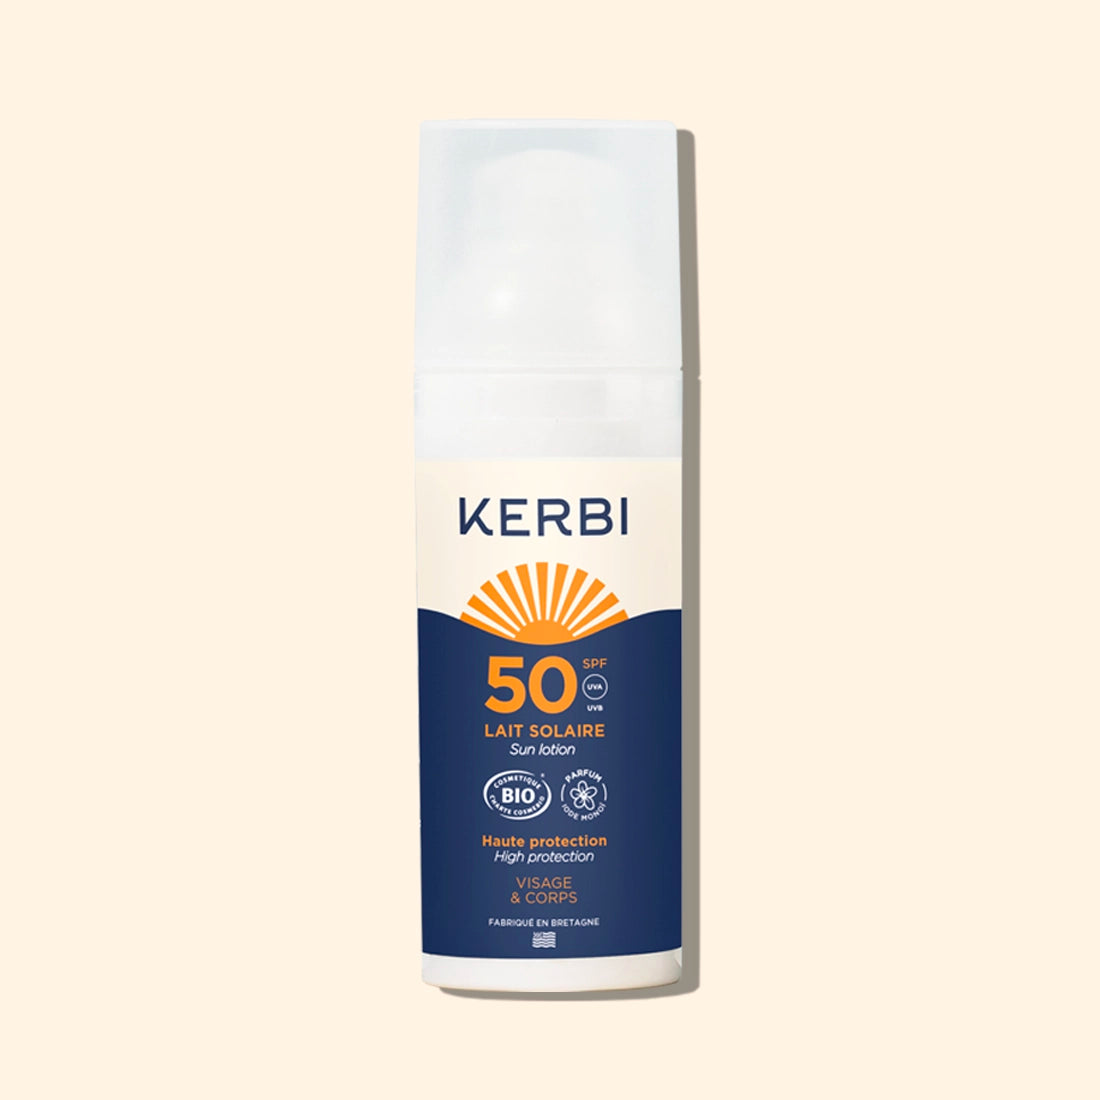 Crème solaire bio Kerbi SPF 50 format voyage